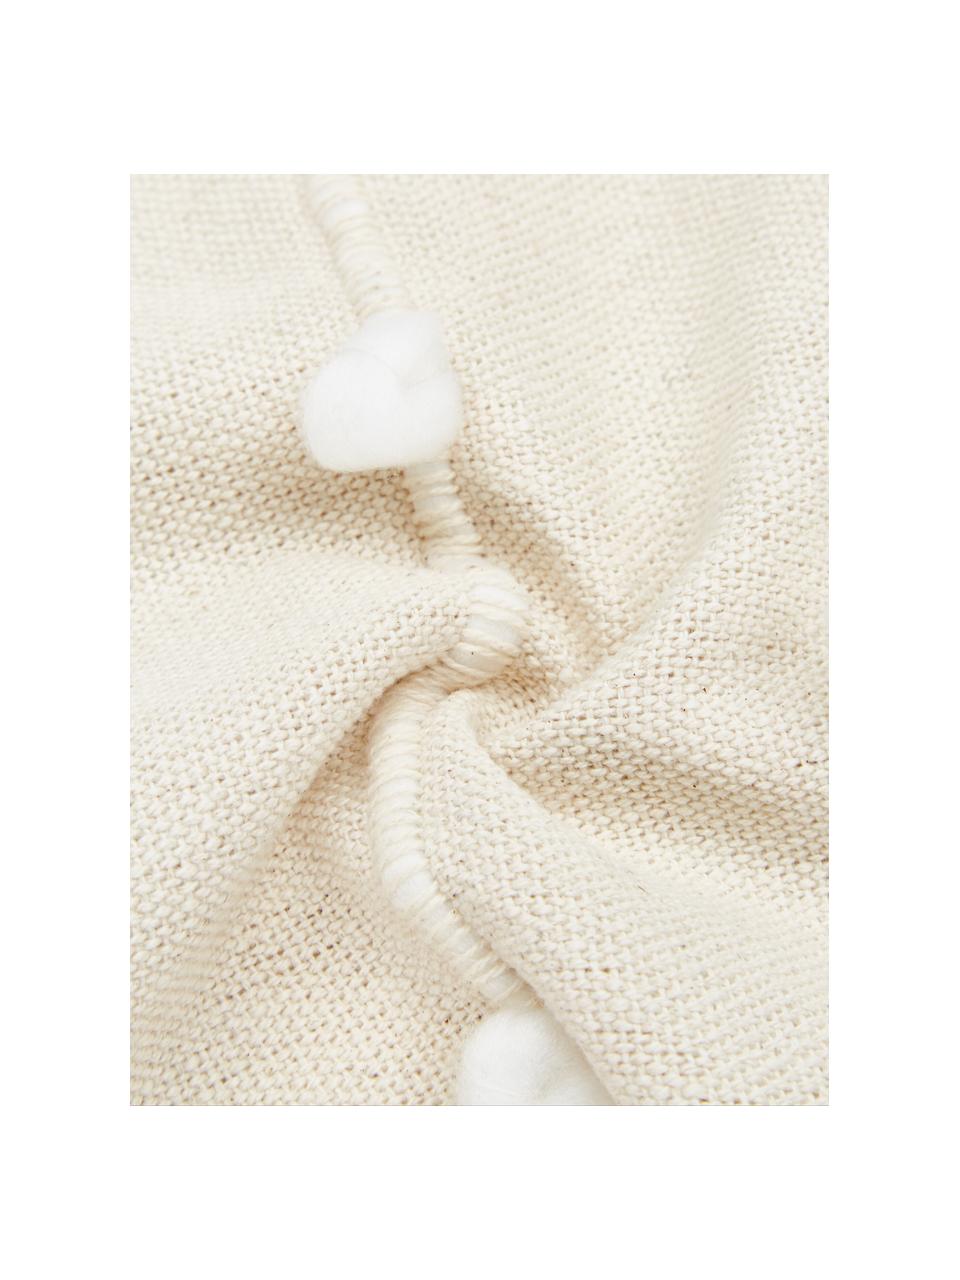 Kissen Bubble mit Verzierungen, mit Inlett, Bezug: 100% Baumwolle, Gebrochenes Weiß, Weiß, 45 x 45 cm